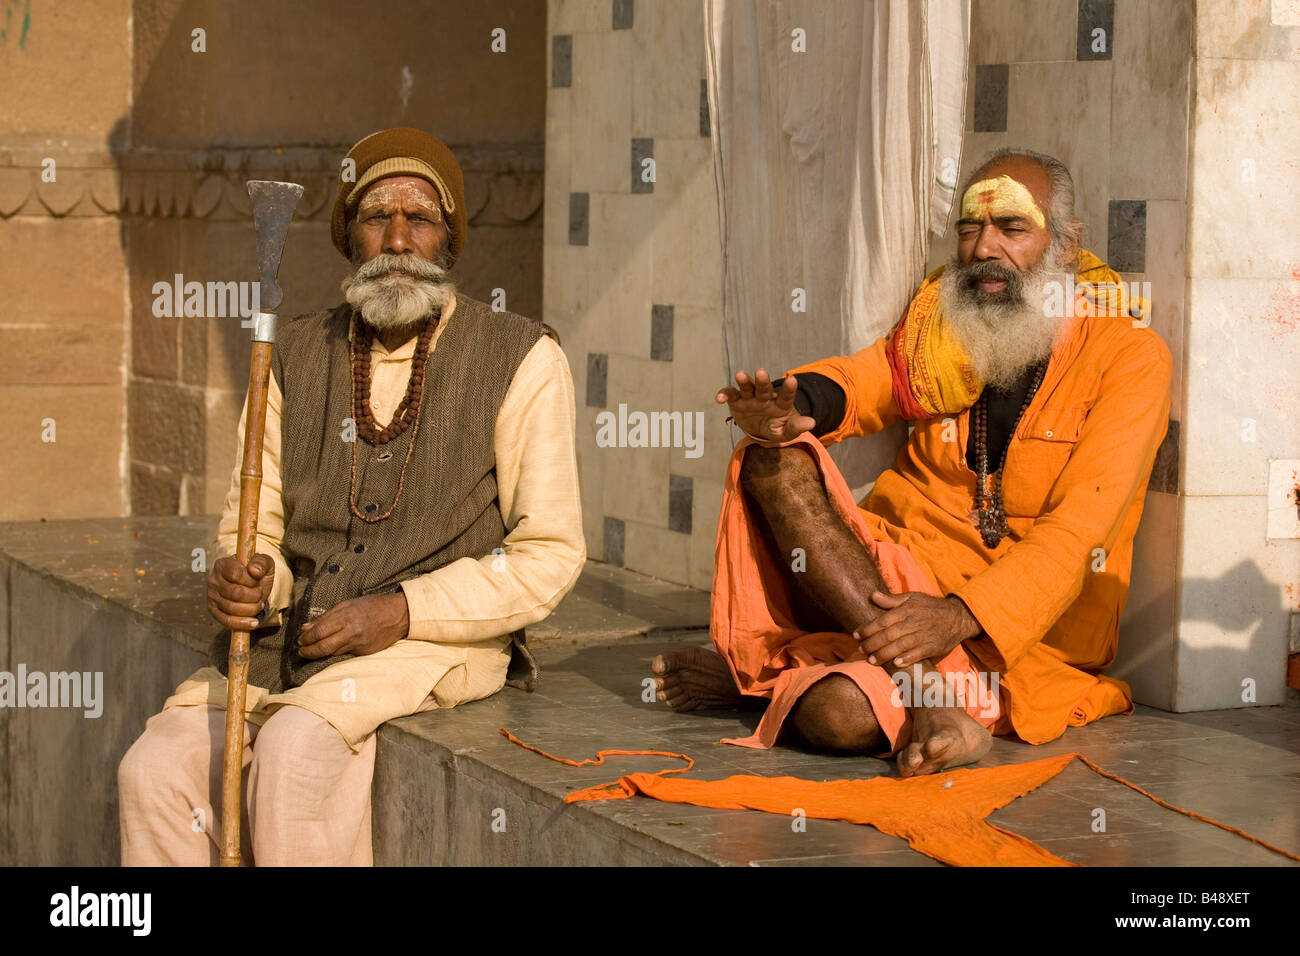 Un sadhu barbu se trouve dans la contemplation d'un temple dans la ville de Varanasi, en Inde. Un homme avec un personnel s'assoit à côté de lui. Banque D'Images